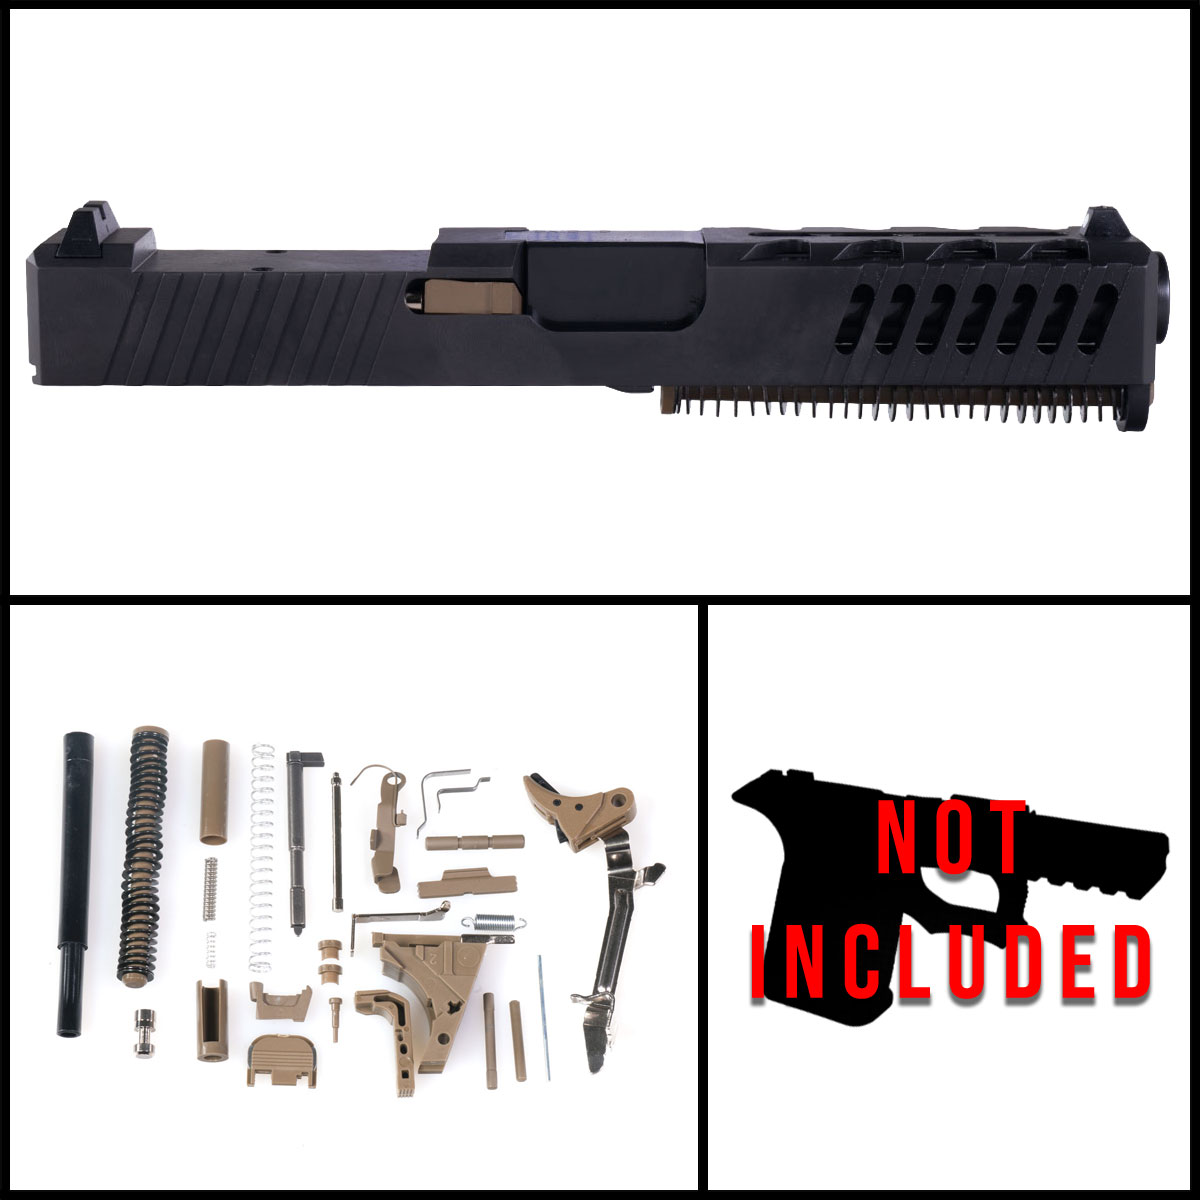 DDS 'Khaki' 9mm Full Pistol Build Kit (Everything Minus Frame) - Glock 19 Gen 1-3 Compatible